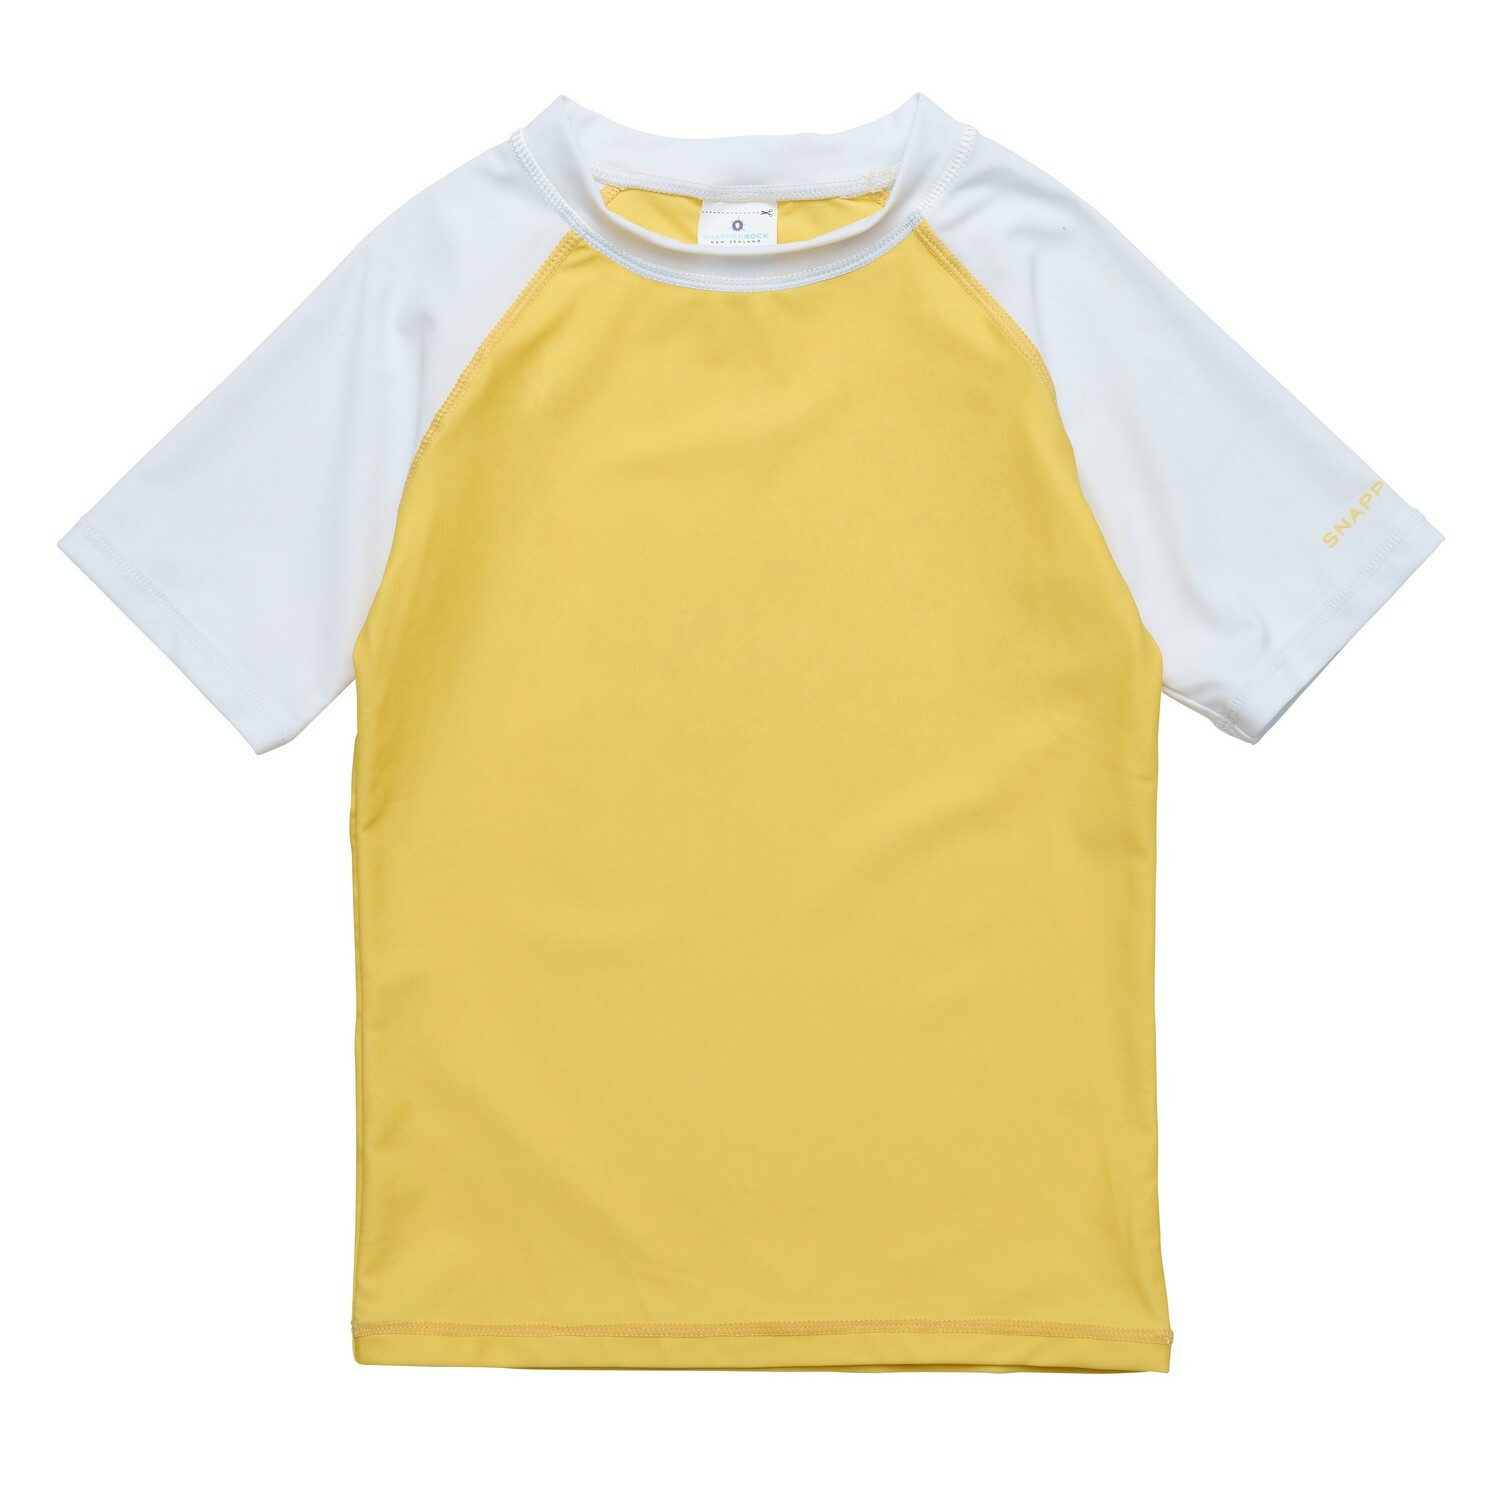 Snapper Rock - UV Rash top for kids - Short sleeve - Yellow/White